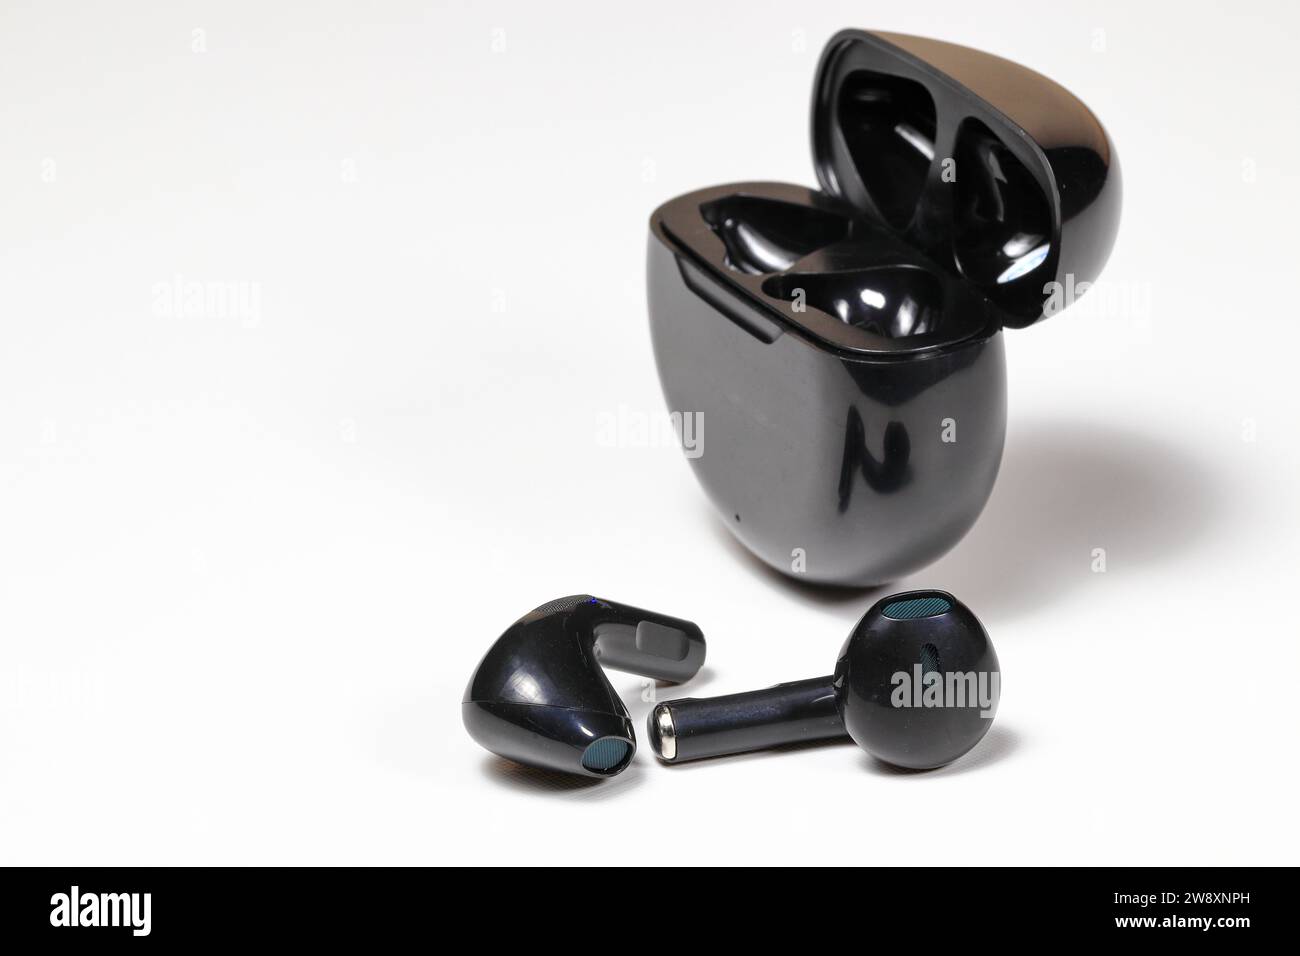 Schwarzer kabelloser bluetooth-Kopfhörer oder -Ohrhörer oder -Kopfhörer, isoliert auf weißem Hintergrund. Stockfoto